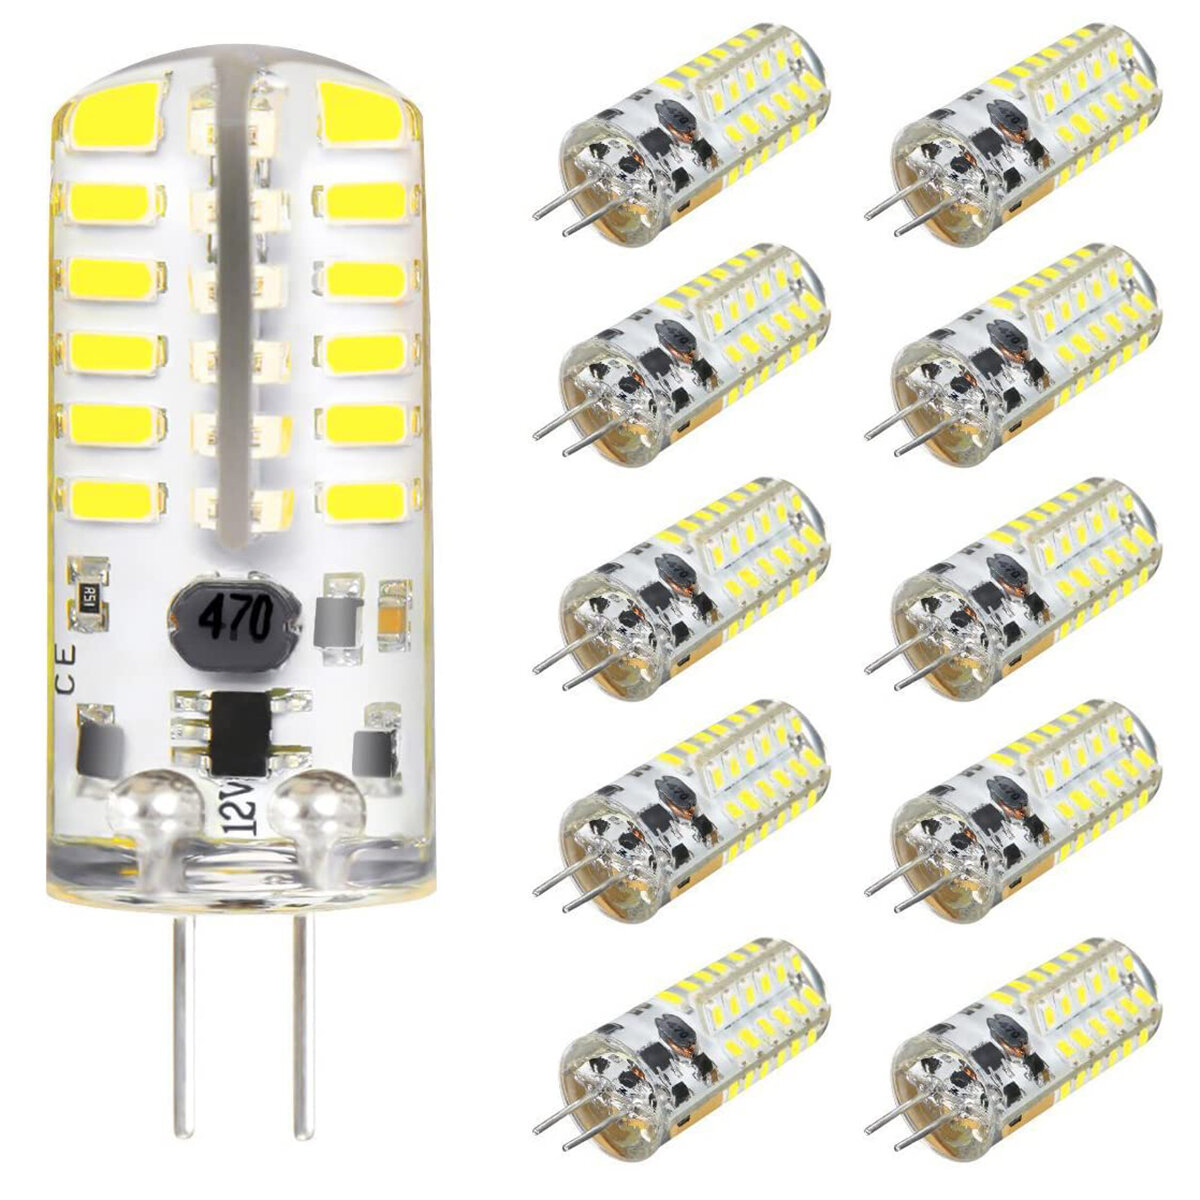 10PCS DC12V 3W G4 3014 48SMD LED Light Bulb Bi-Pin Base Capsule Corn Lamp 3000K-6000K Ultra Bright Lamp Bulbs